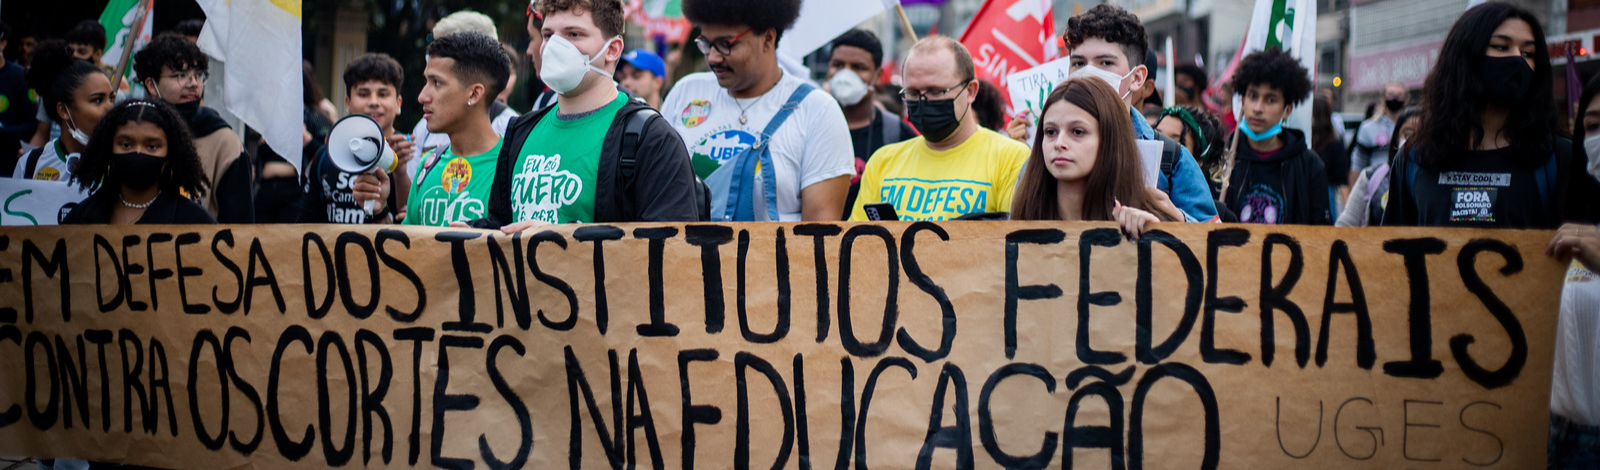 Ensino Médio está em crise na América Latina porque governos adotam reformas neoliberais